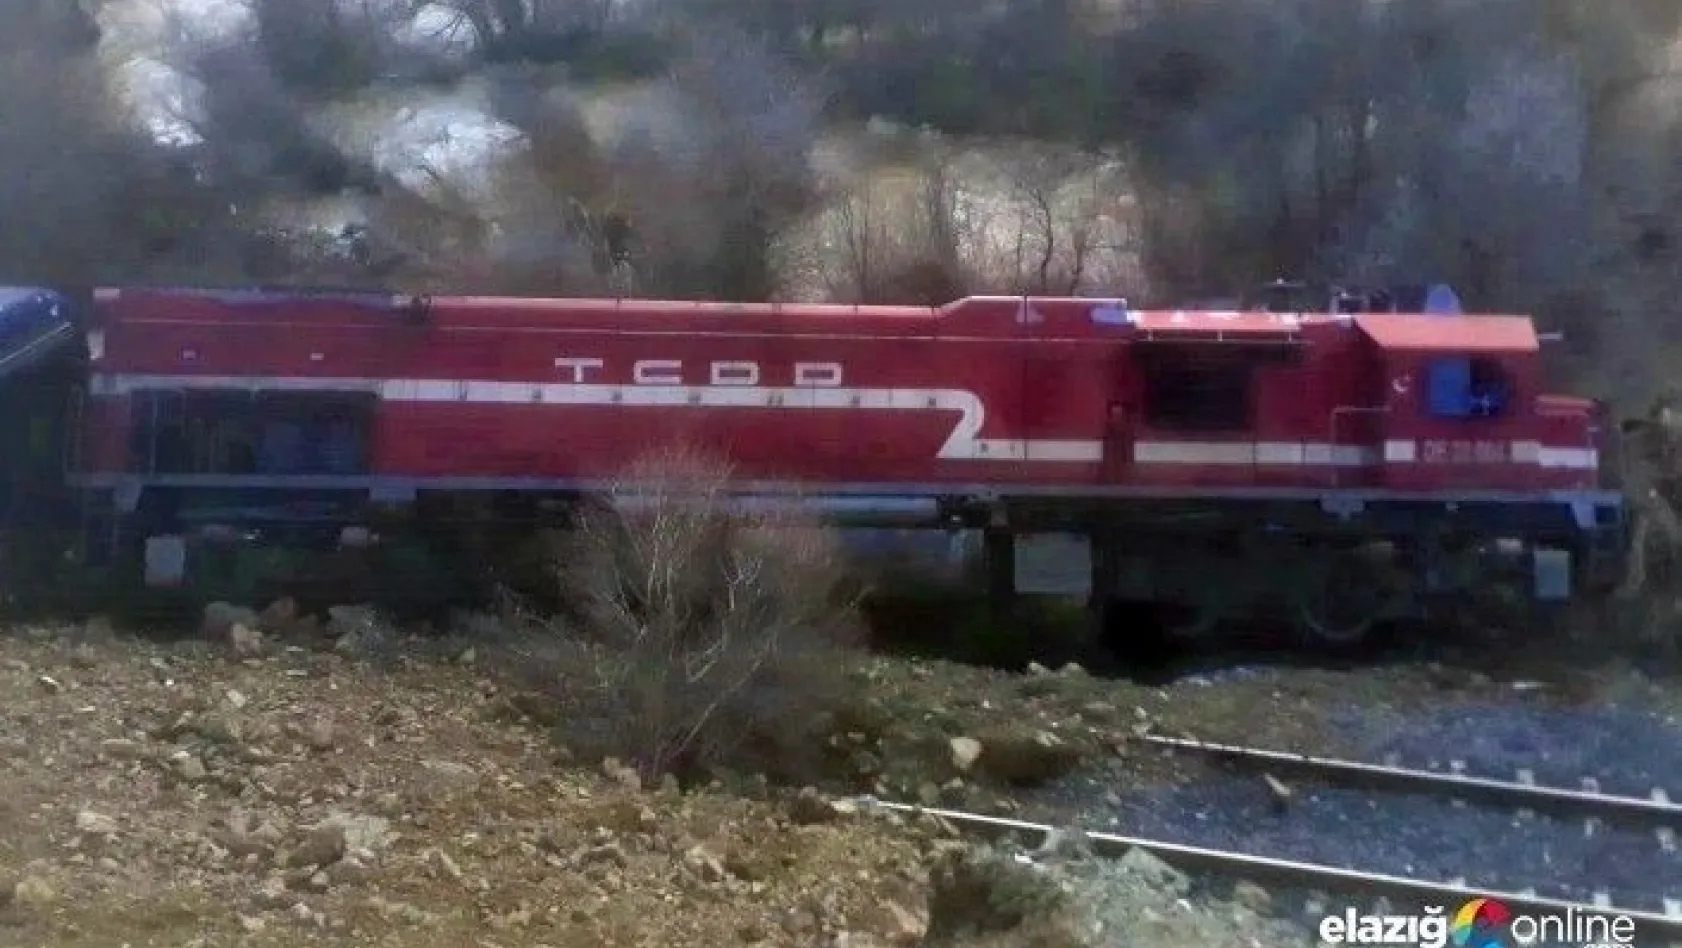 Elazığ'da heyelan nedeniyle 80 yolcunun bulunduğu tren yoldan çıktı